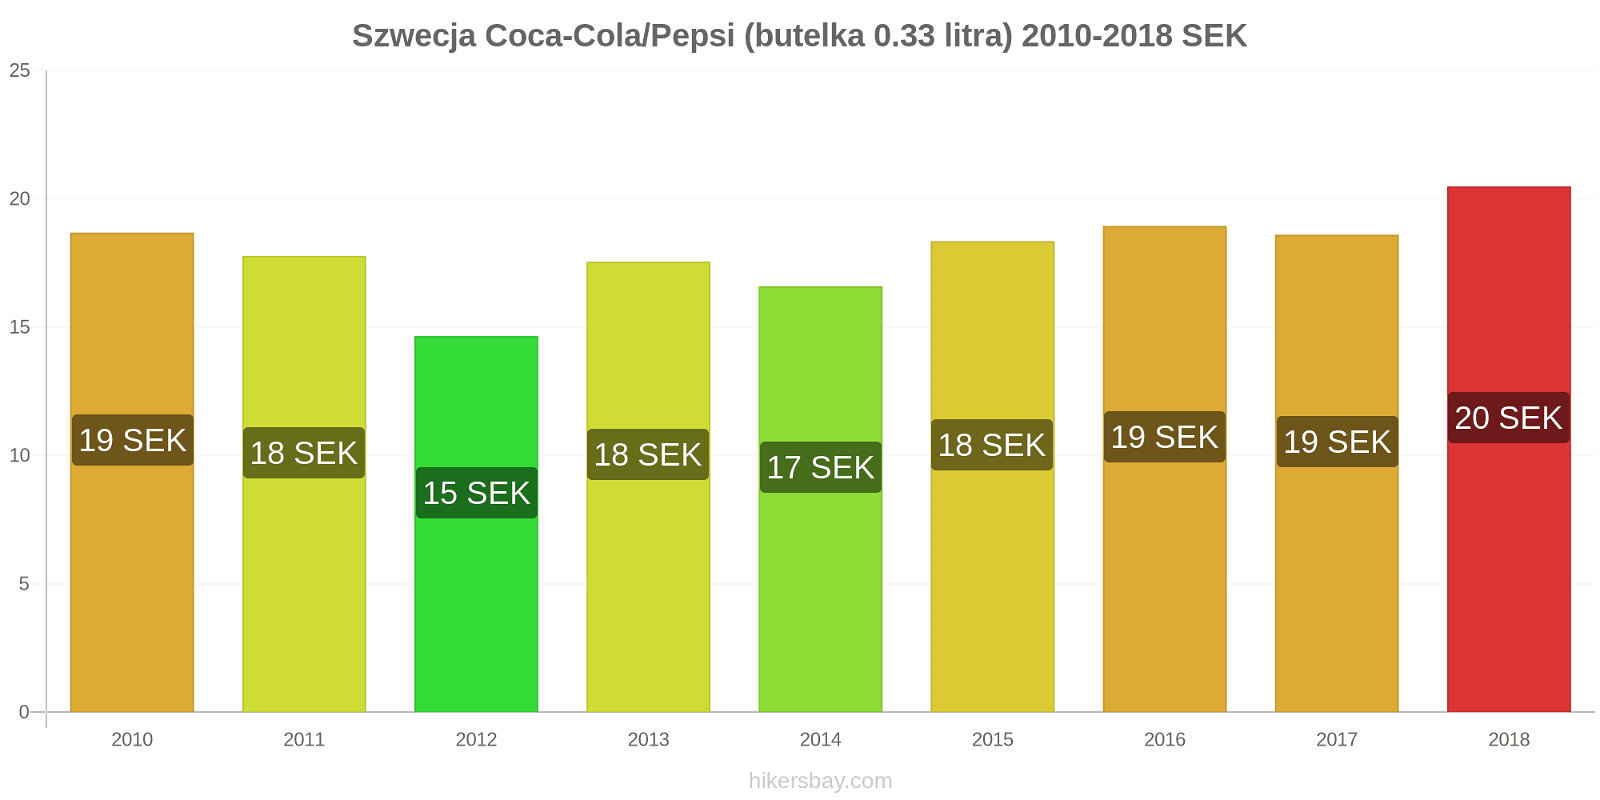 Szwecja zmiany cen Coca-Cola/Pepsi (butelka 0.33 litra) hikersbay.com